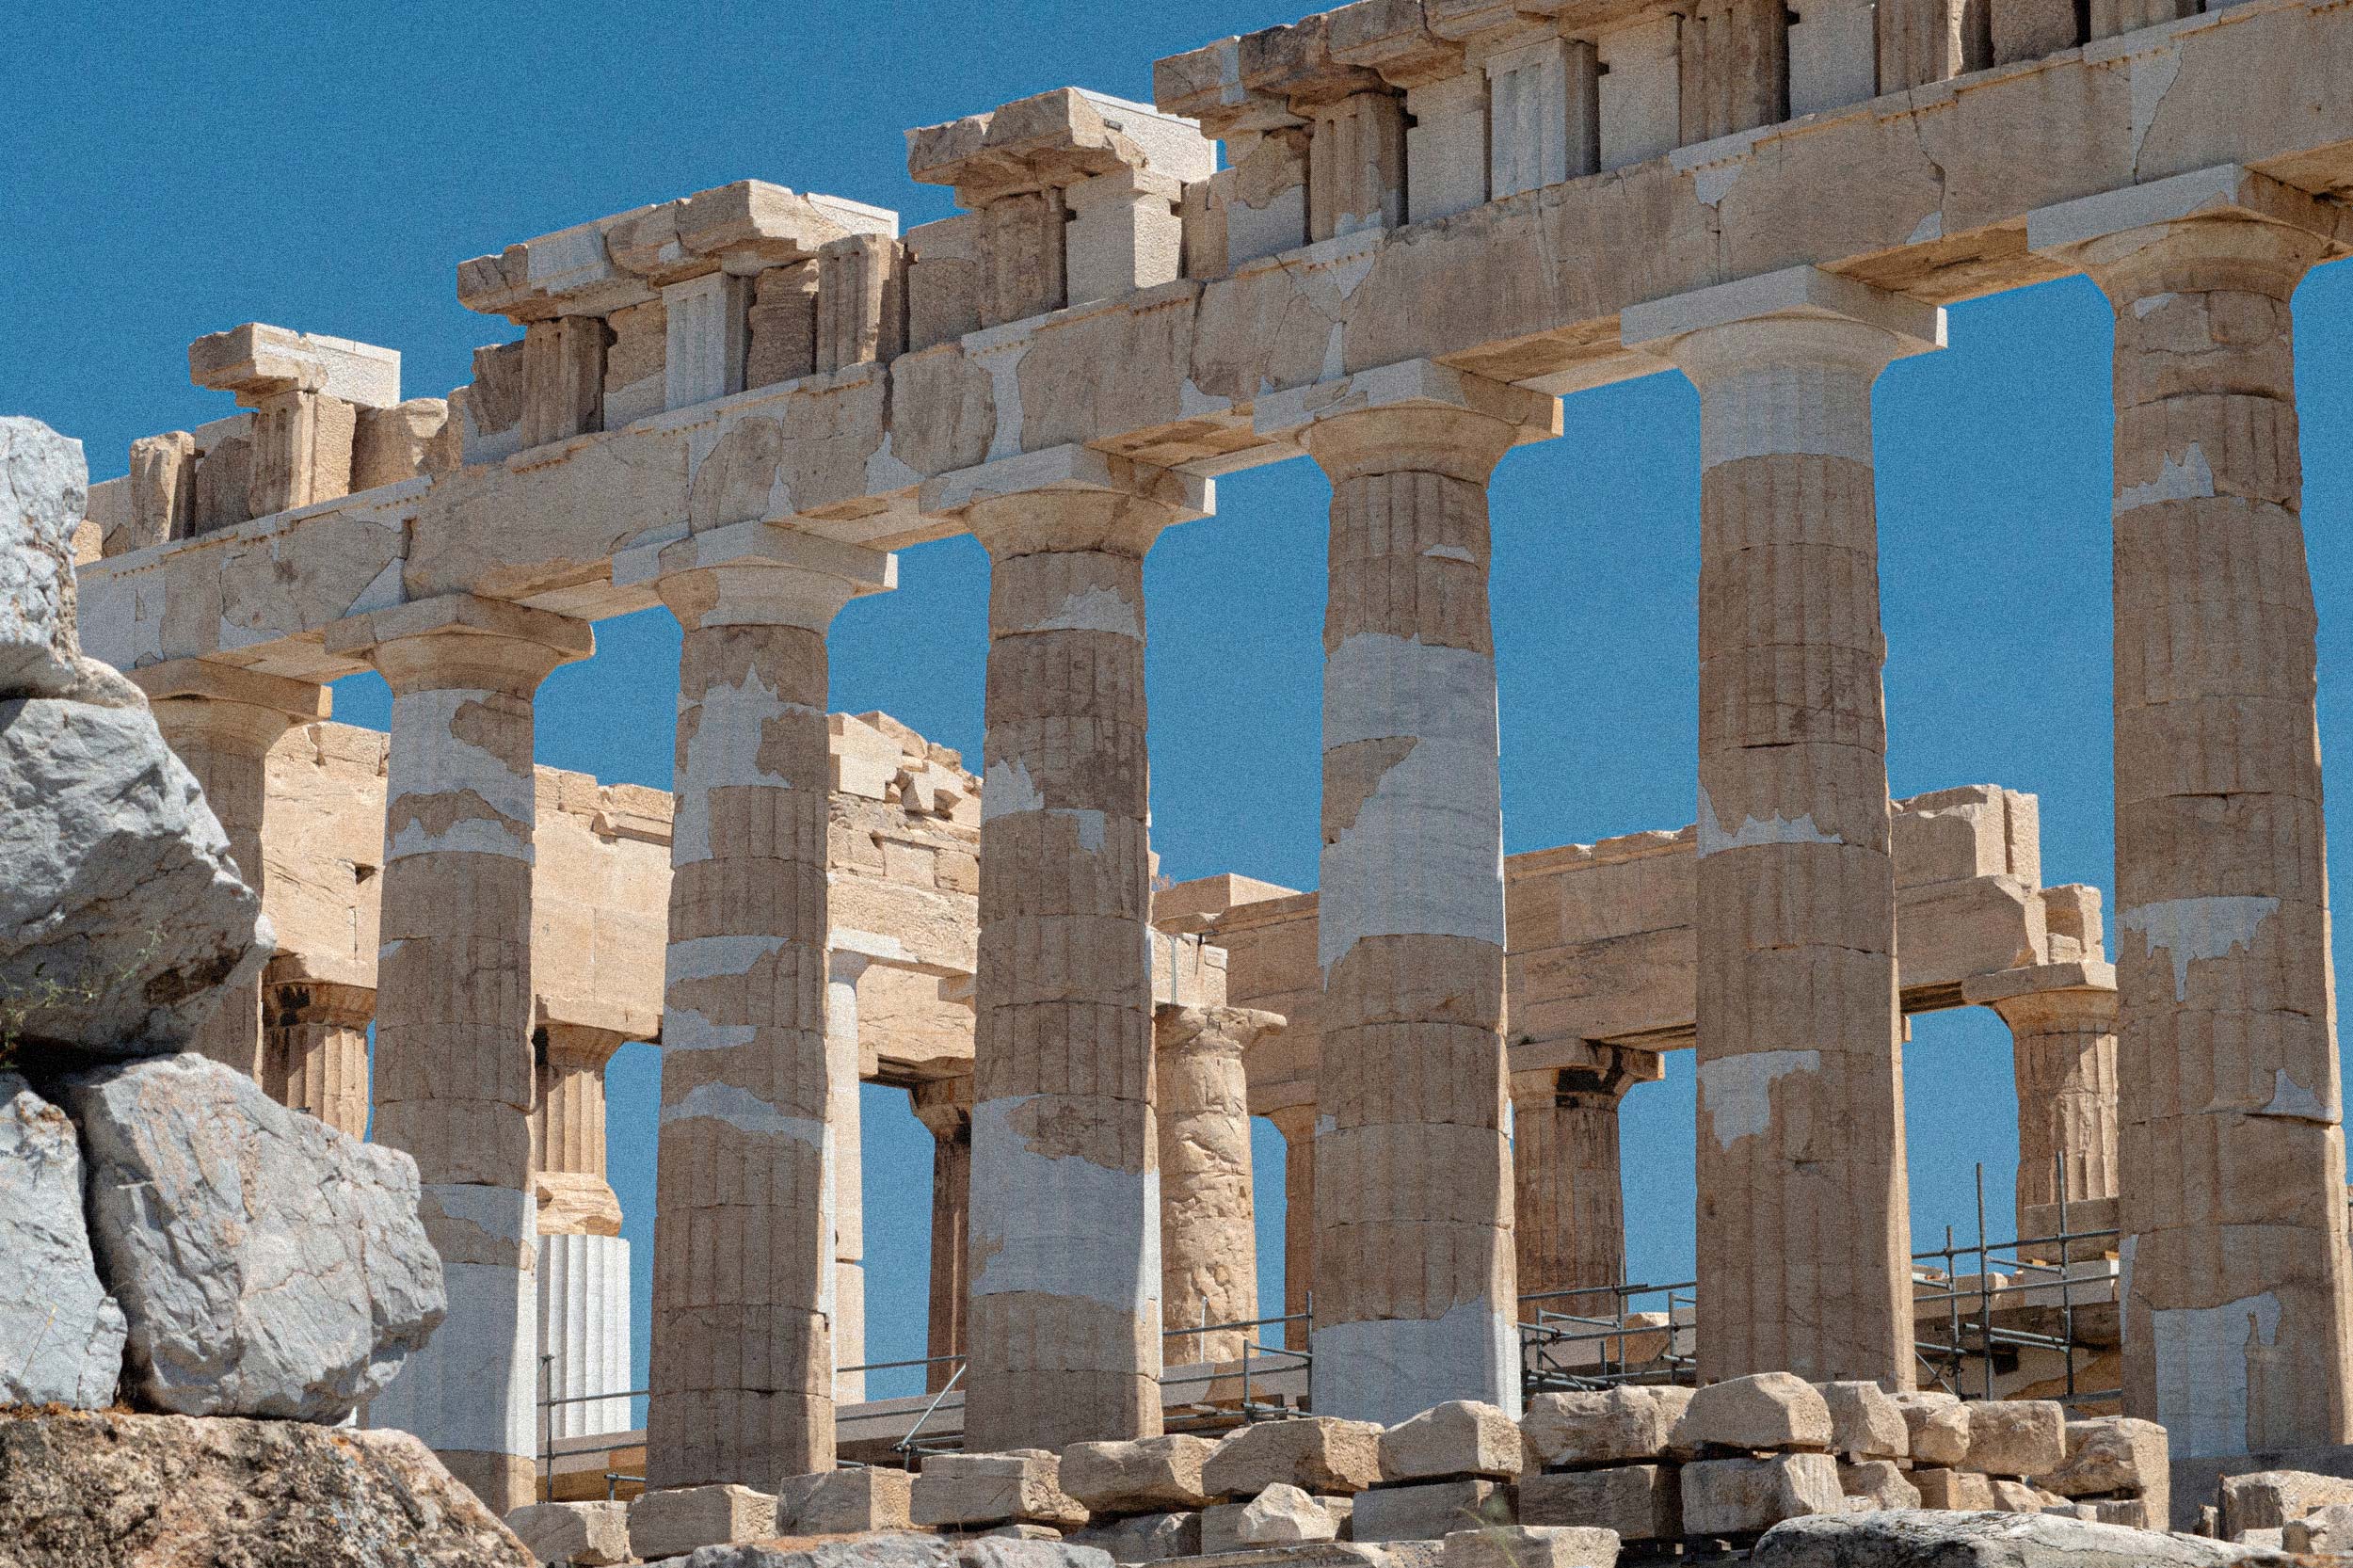 Teilweise restaurierte griechische Tempelruine an einem sonnigen Tag